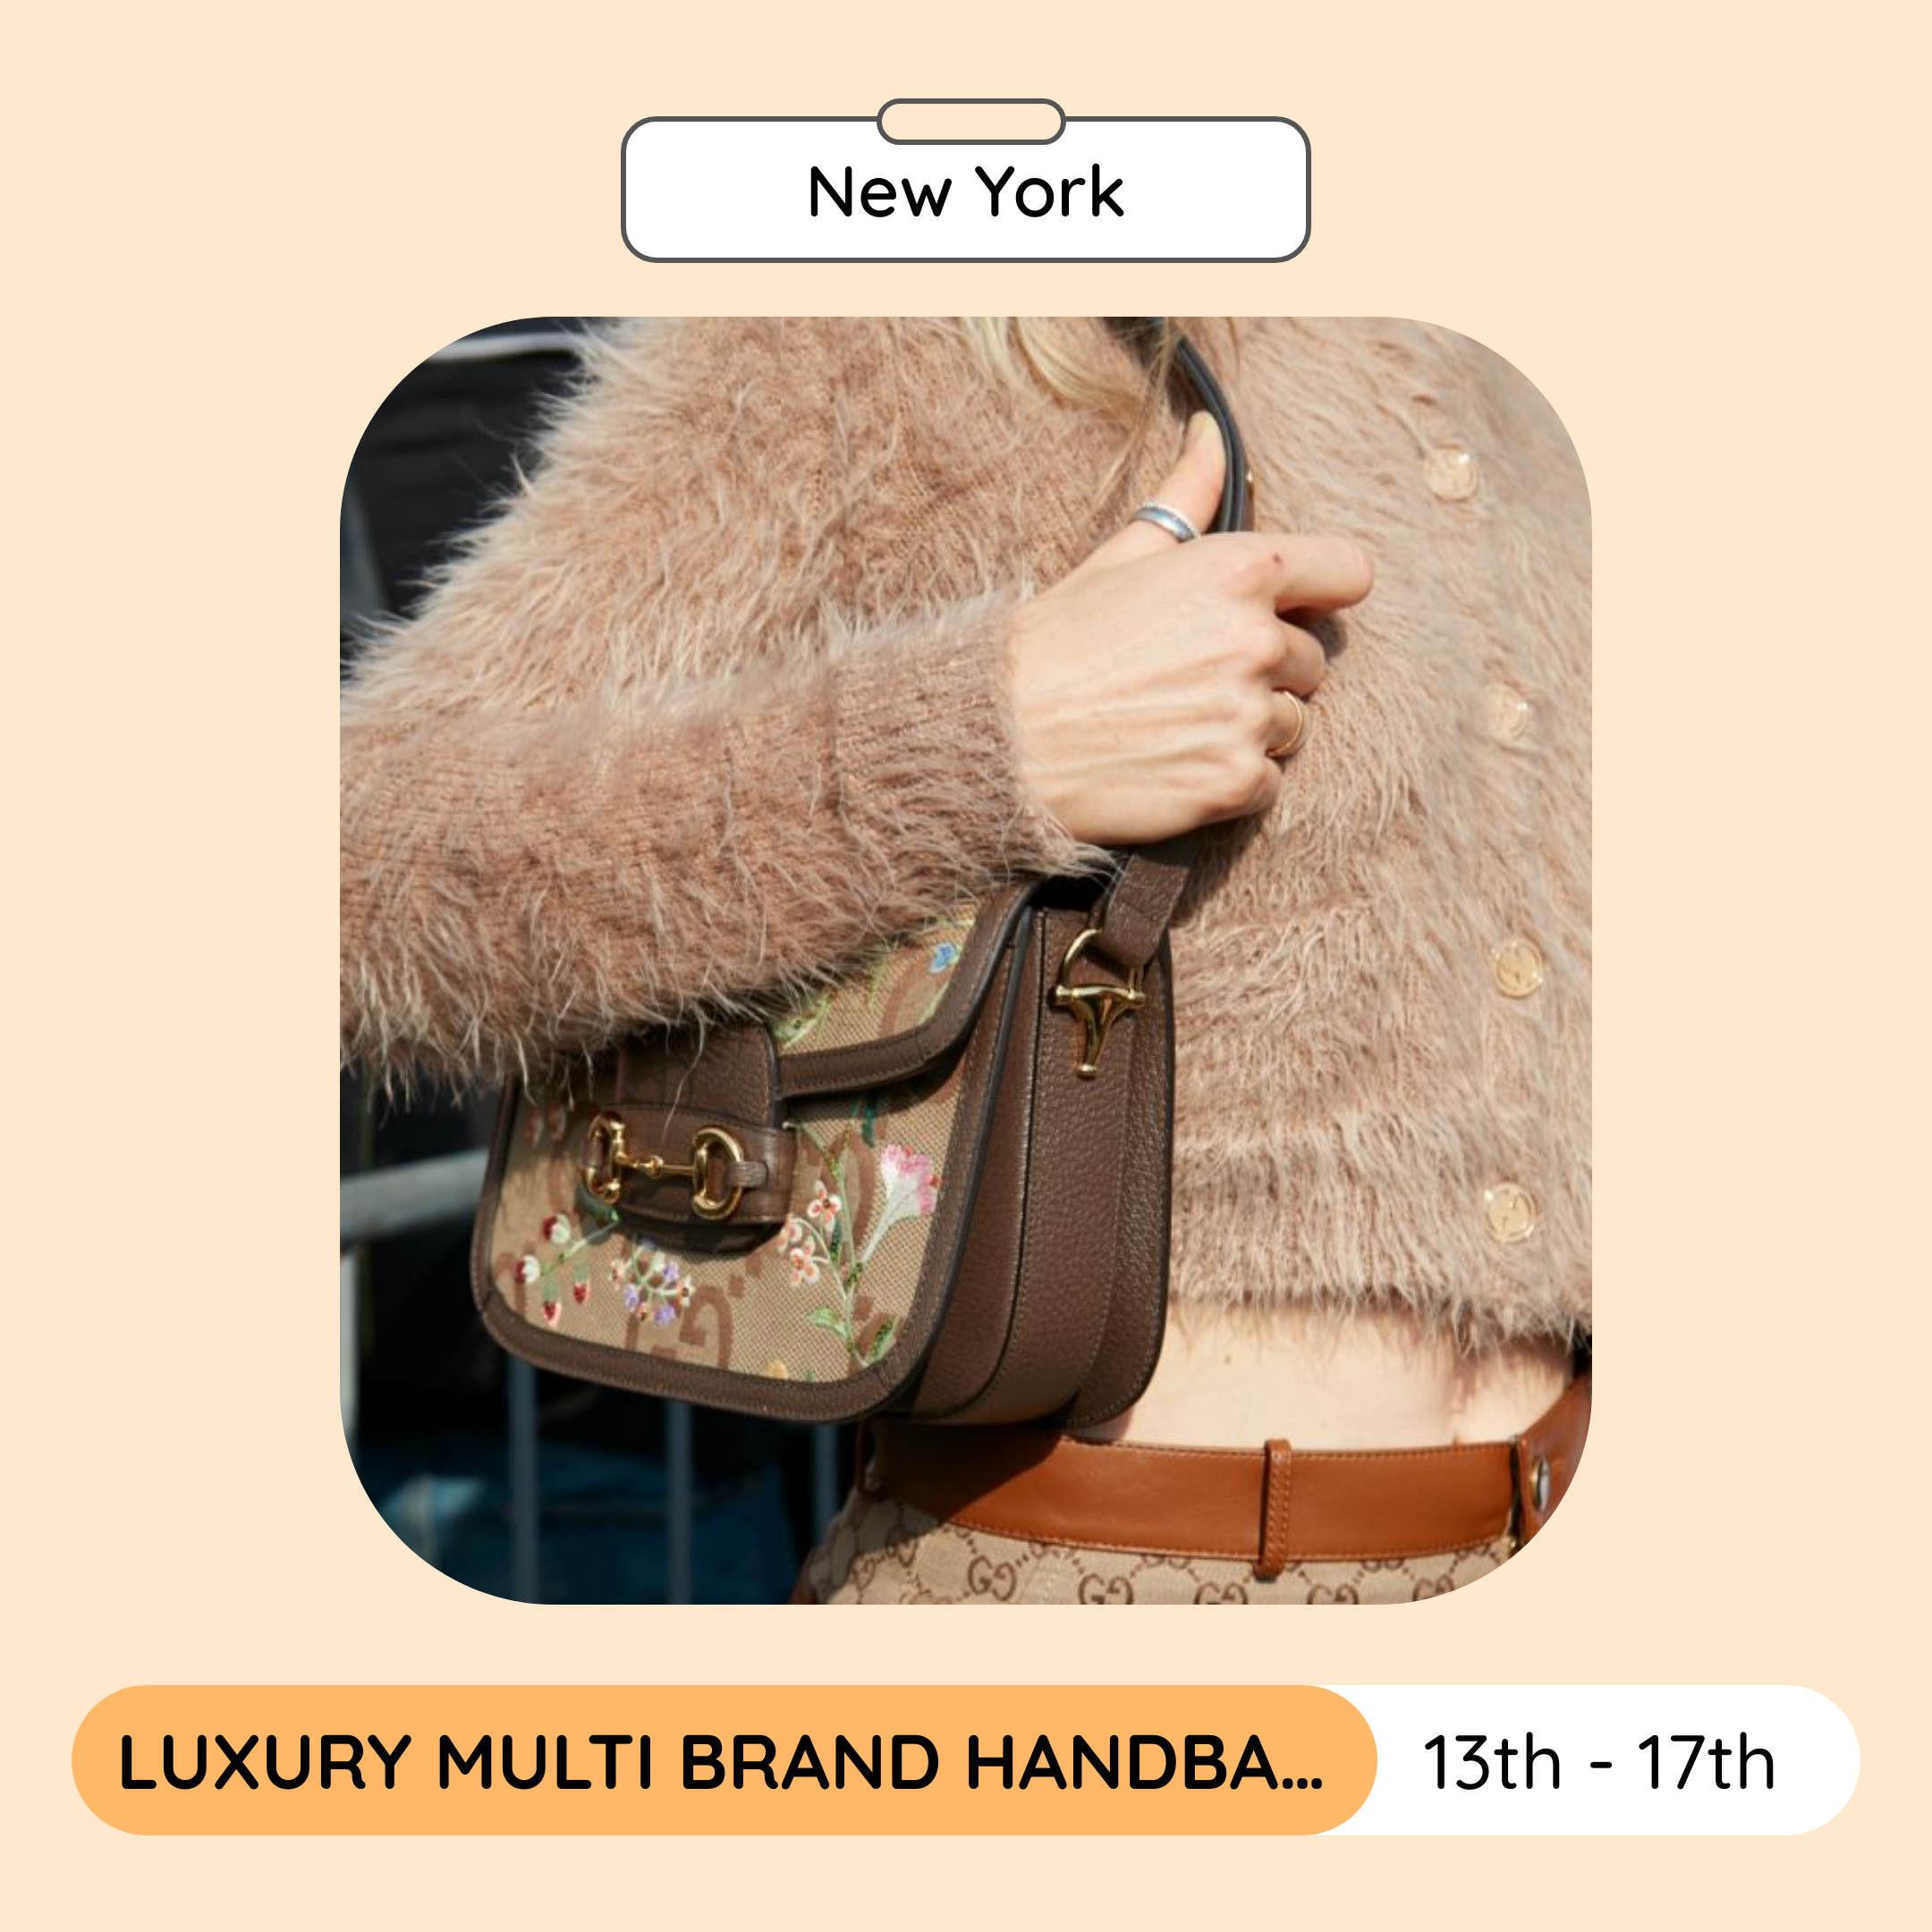 Luxury Multi Brand Handbags, Accessories & Footwear Sale, New York